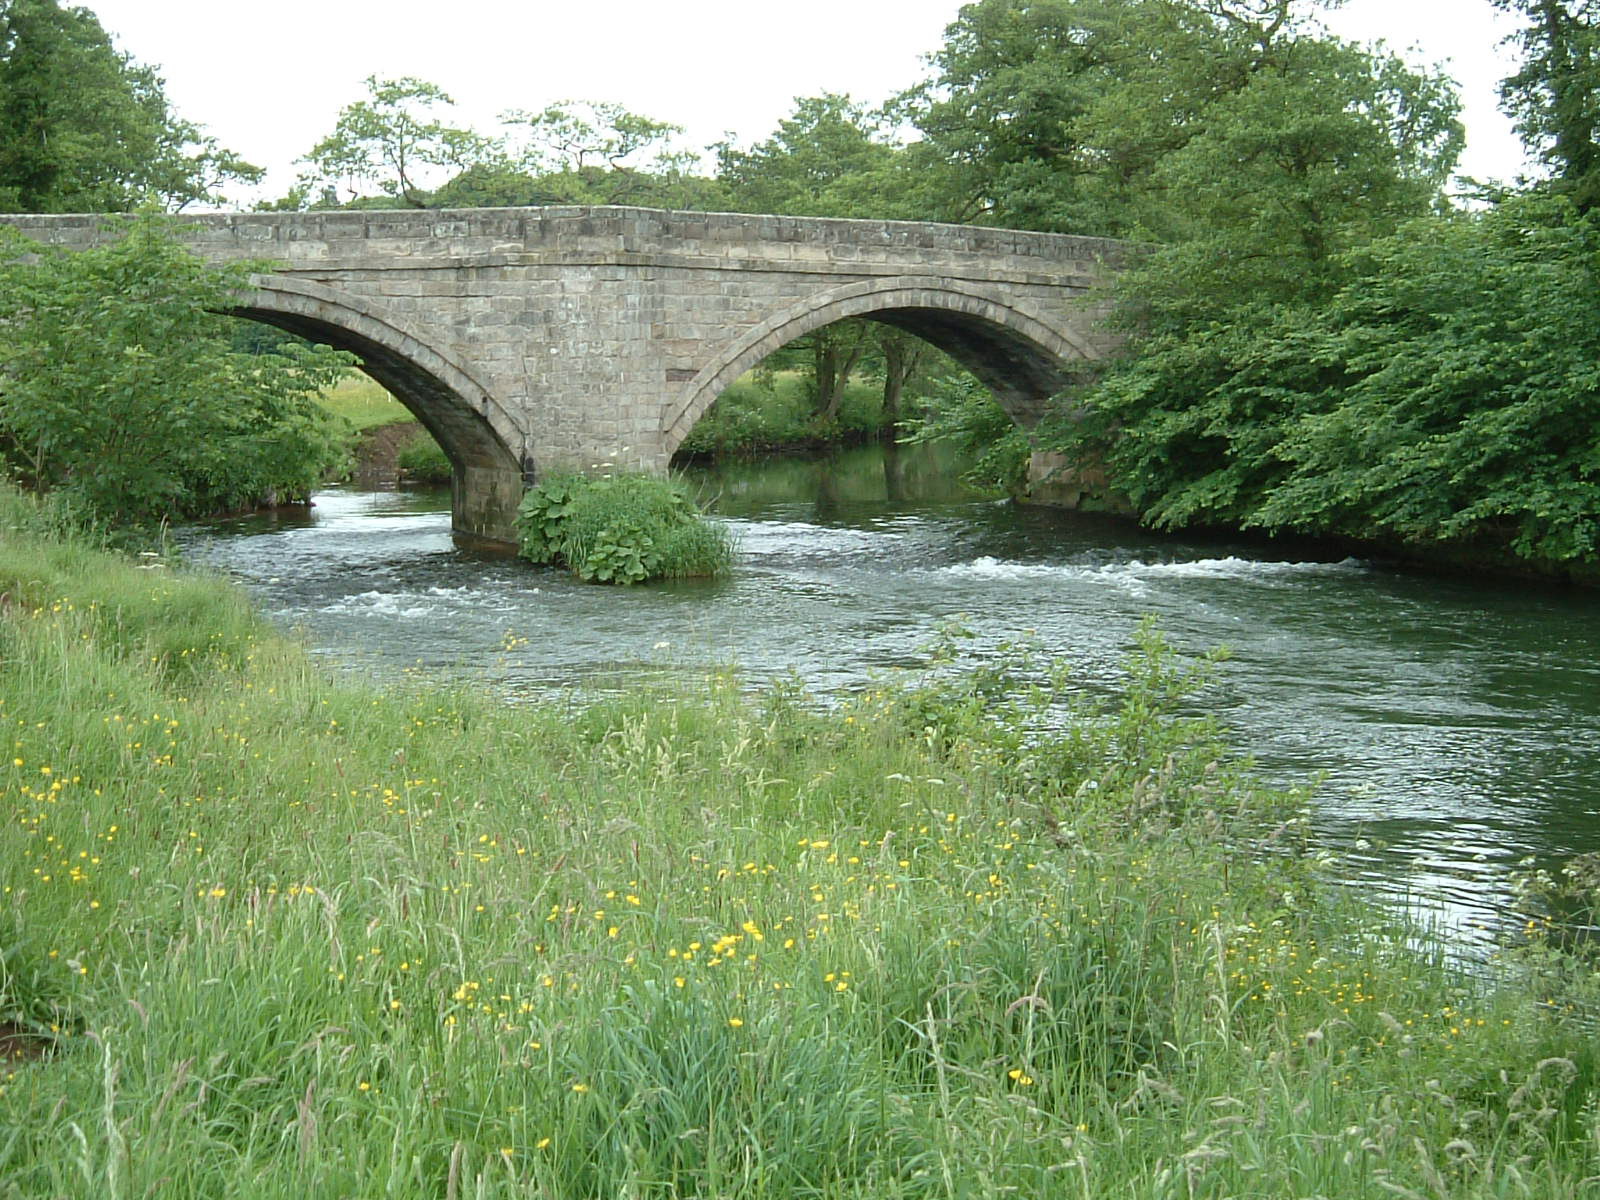 A bridge over the River Dove at Ellastone